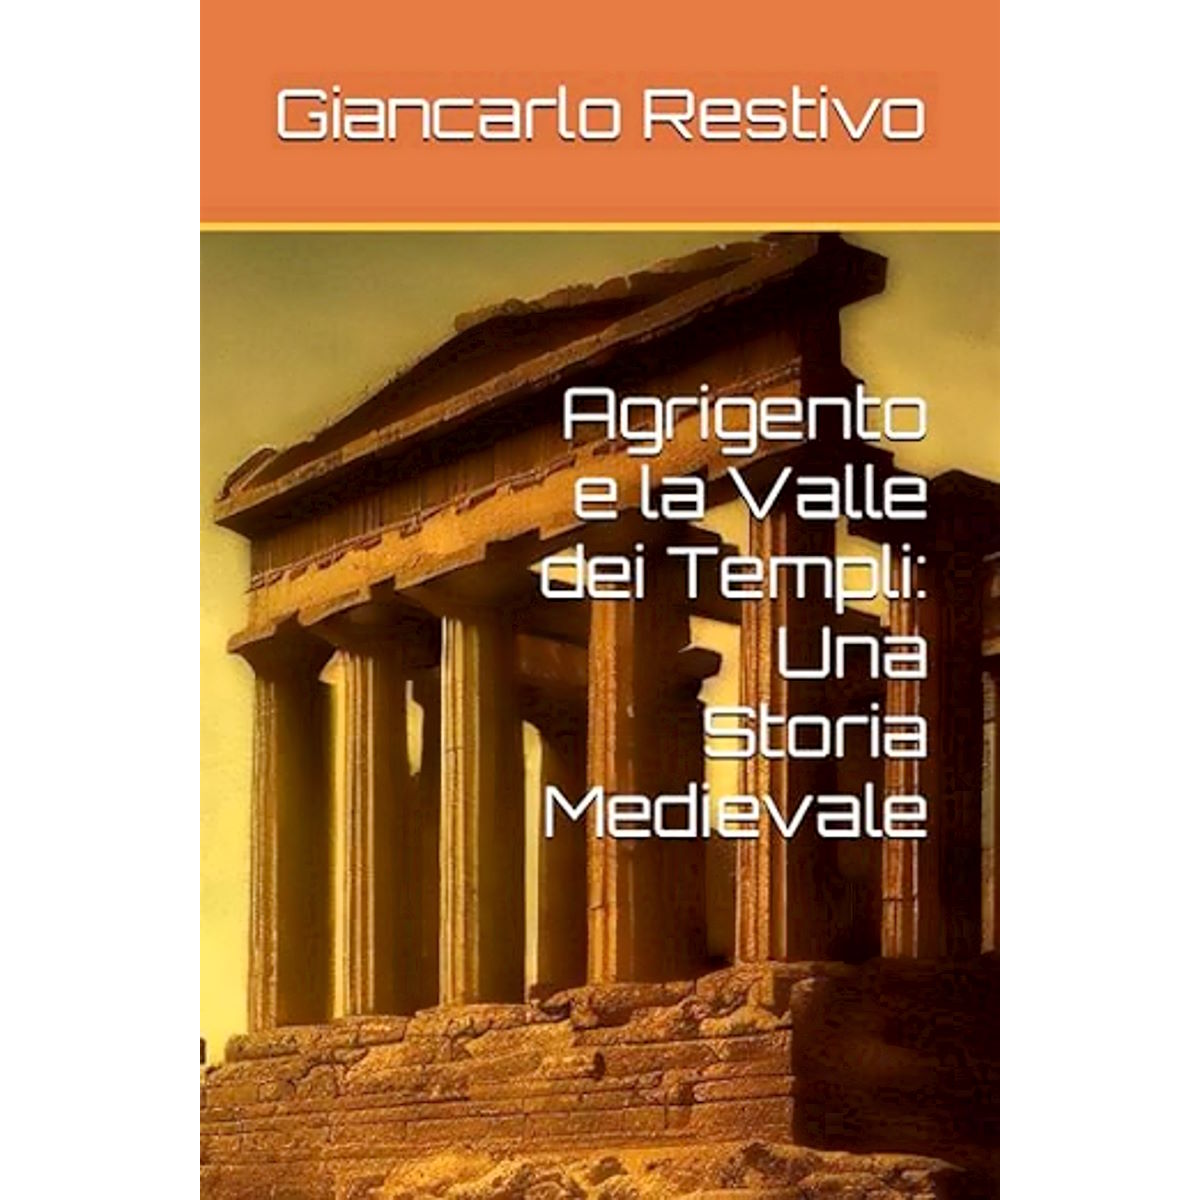 Recensione del libro Agrigento e la Valle dei Templi: Una Storia Medievale di Giancarlo Restivo